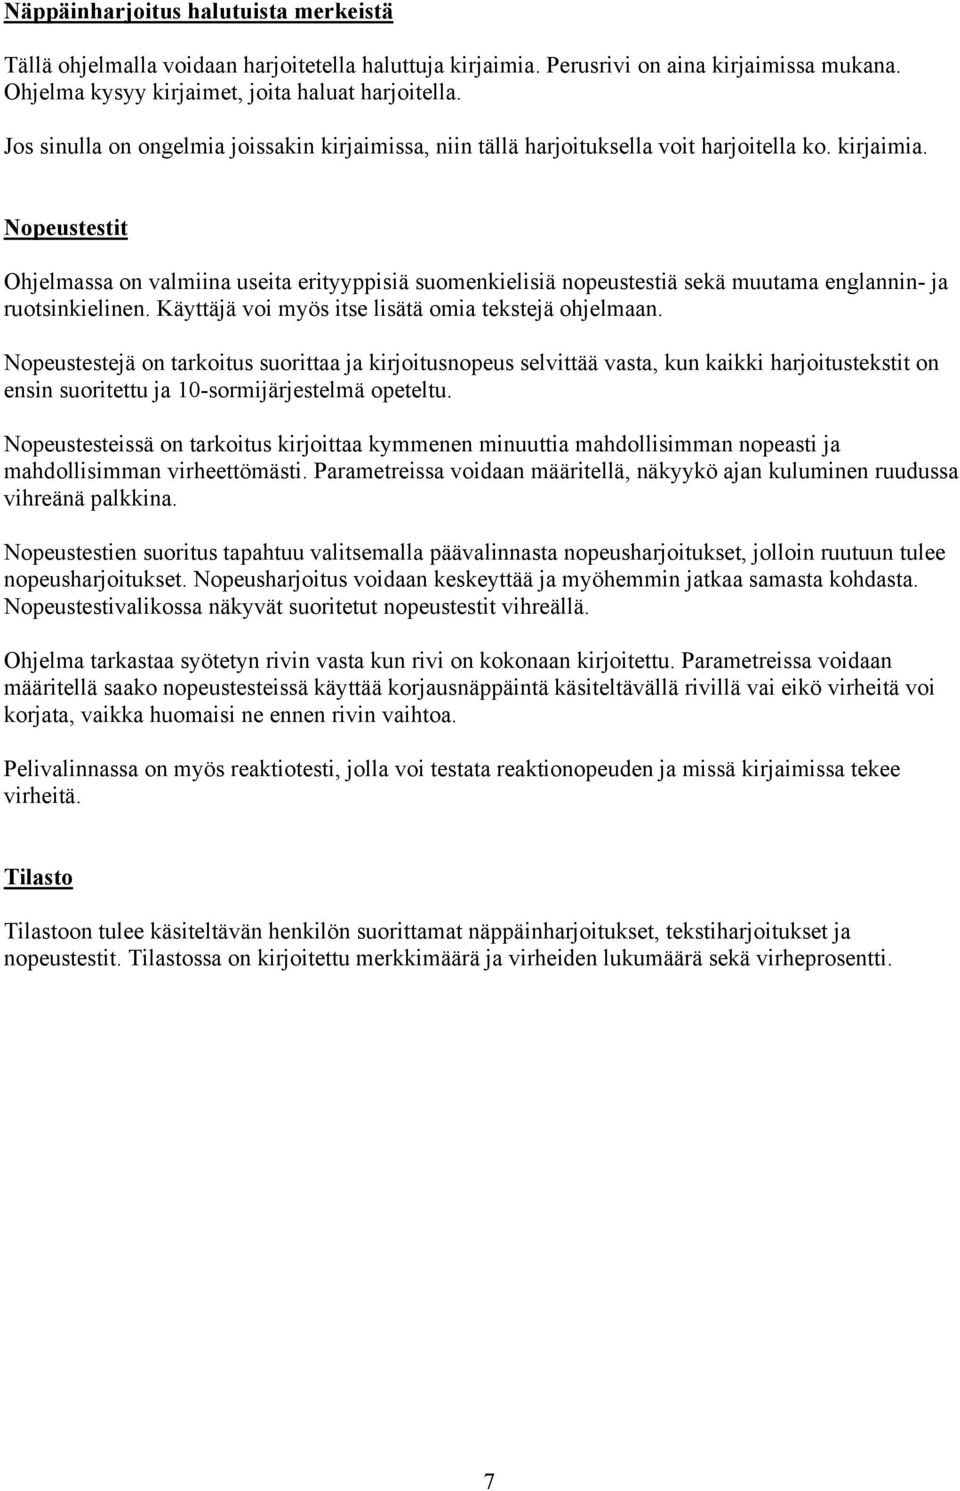 Nopeustestit Ohjelmassa on valmiina useita erityyppisiä suomenkielisiä nopeustestiä sekä muutama englannin- ja ruotsinkielinen. Käyttäjä voi myös itse lisätä omia tekstejä ohjelmaan.